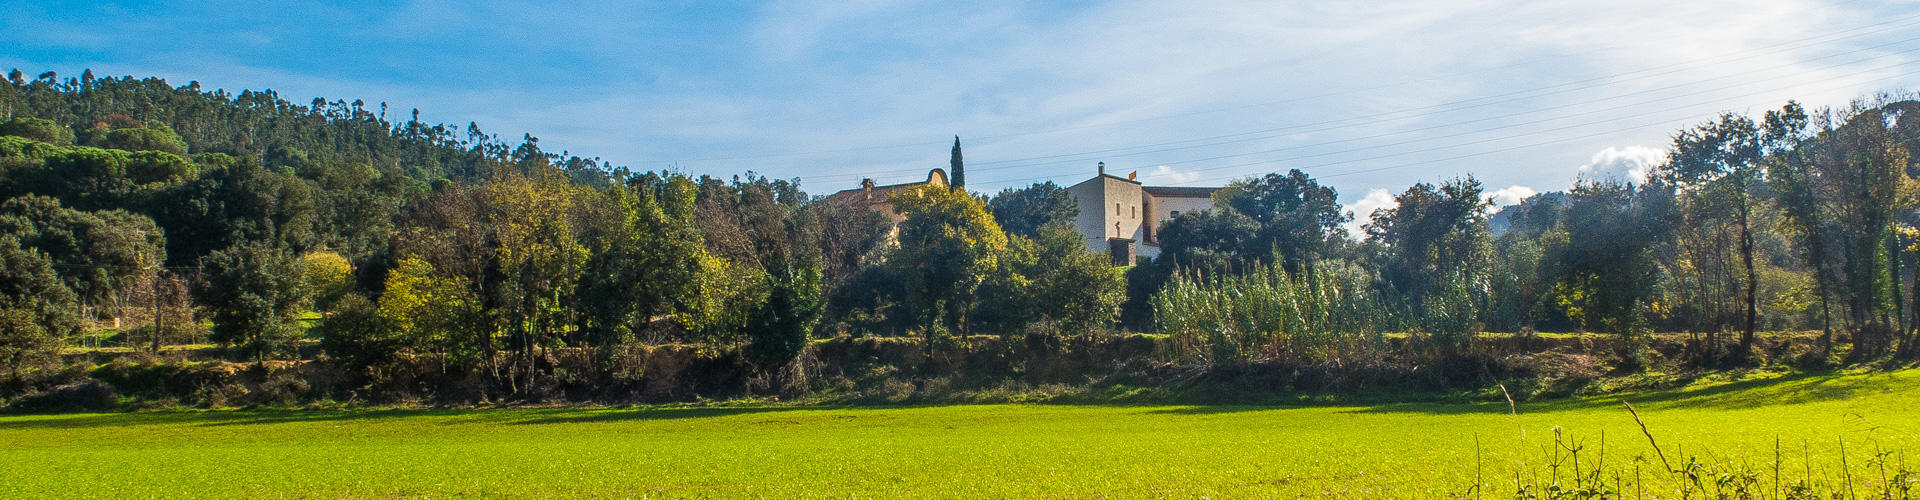 Ruta del Joc Mediambiental per la Vall de Fuirosos. Sant Celoni.